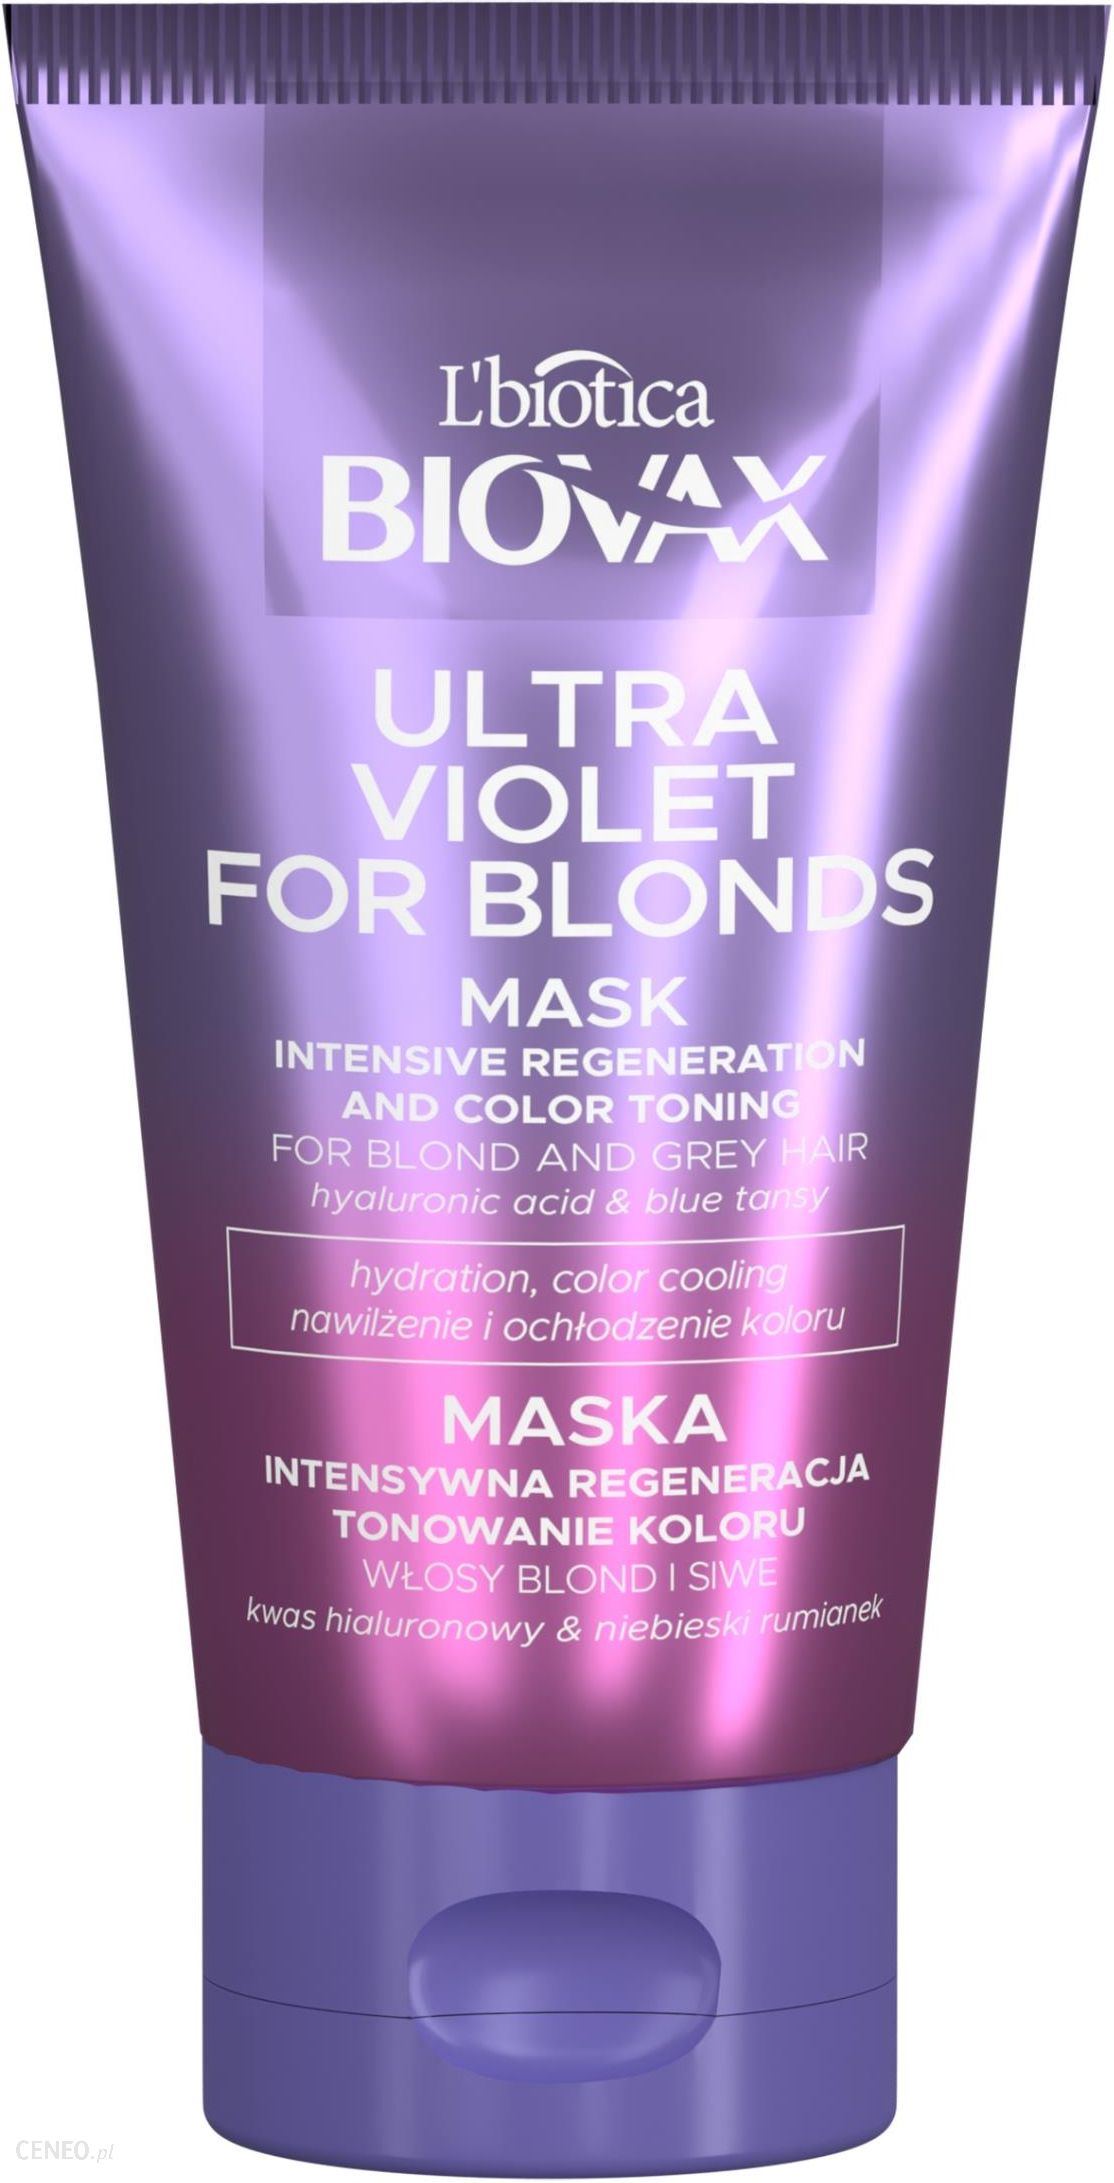 biovax odżywka do włosów farbowanych opinie